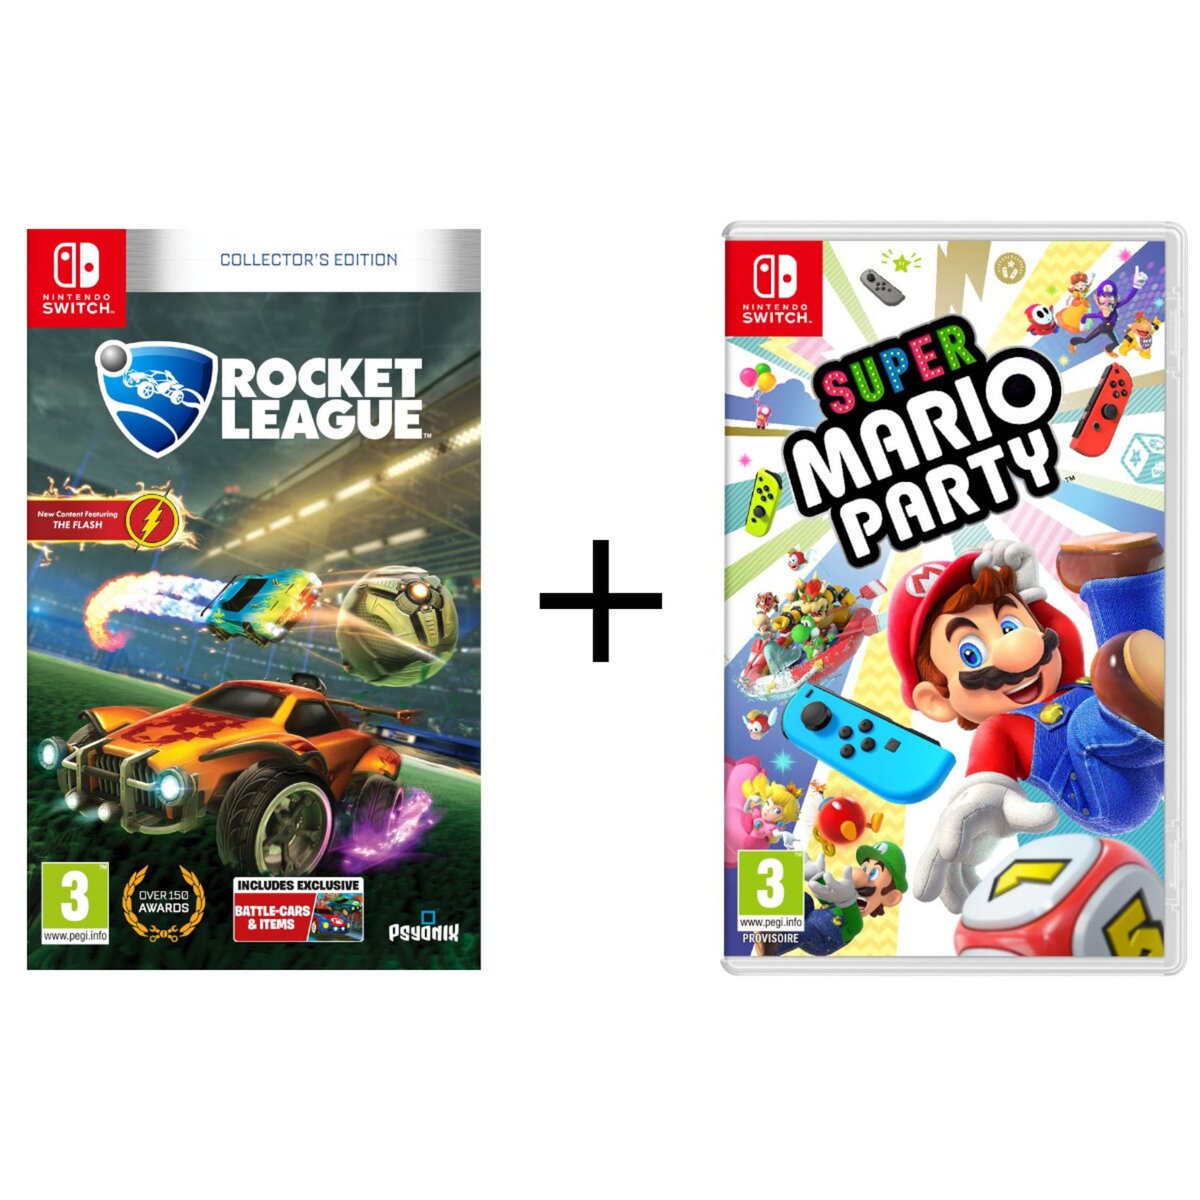 EXCLU WEB Rocket League Collector's Edition Nintendo Switch + Super Mario Party Nintendo Switch